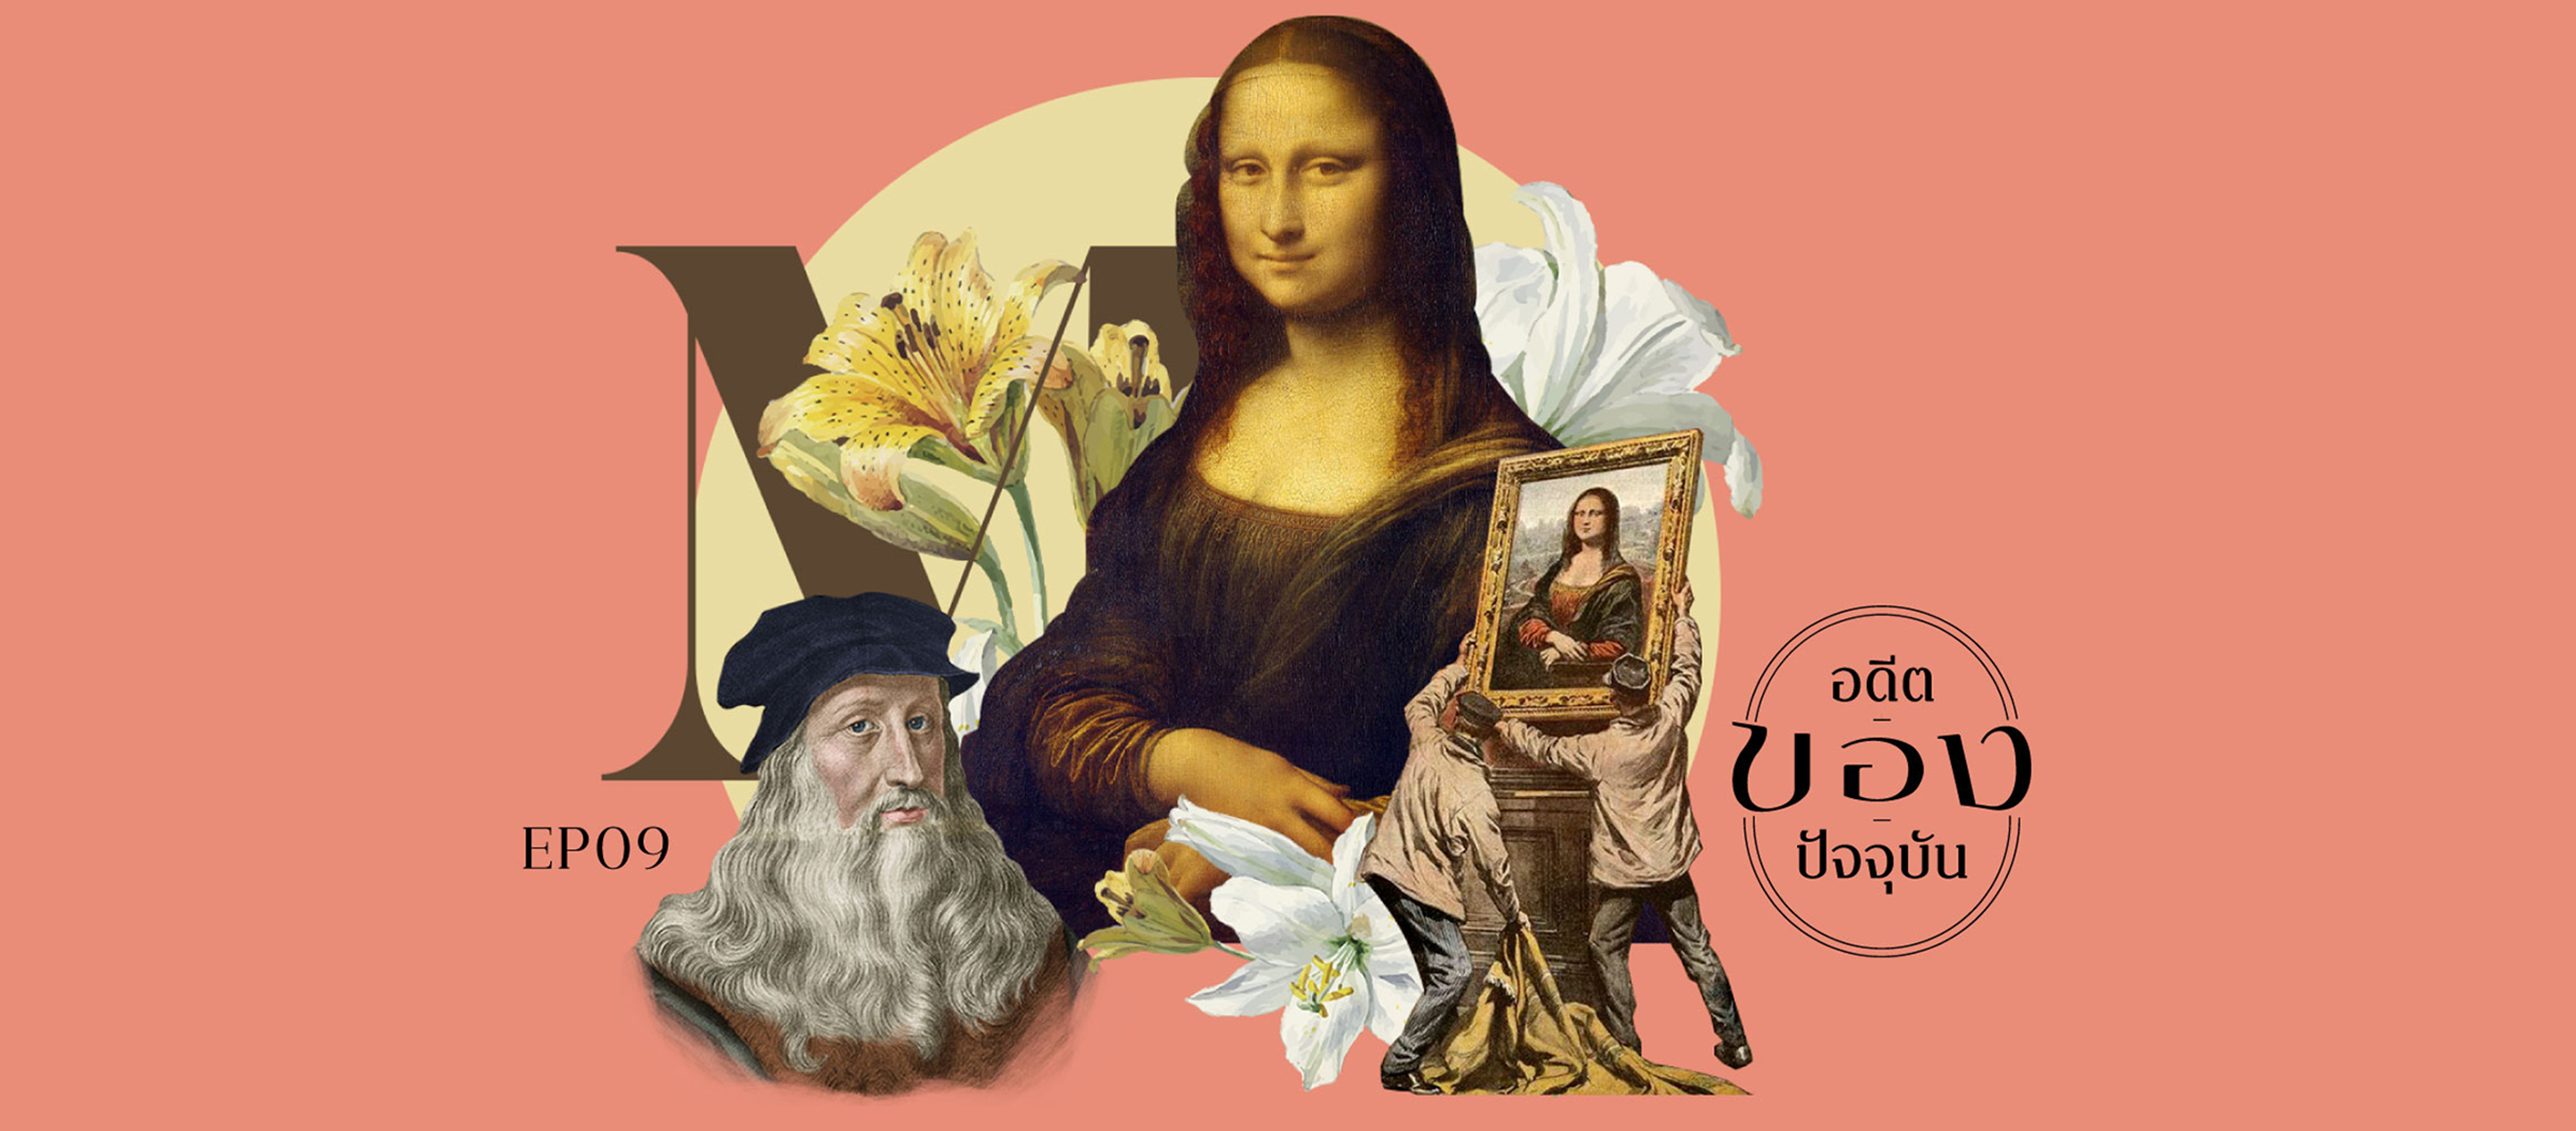 อดีต | ของ | ปัจจุบัน EP.09 Mona Lisa จริงหรือไม่ที่ดาวินชีซ่อนความลับเอาไว้ในภาพโมนาลิซ่า?